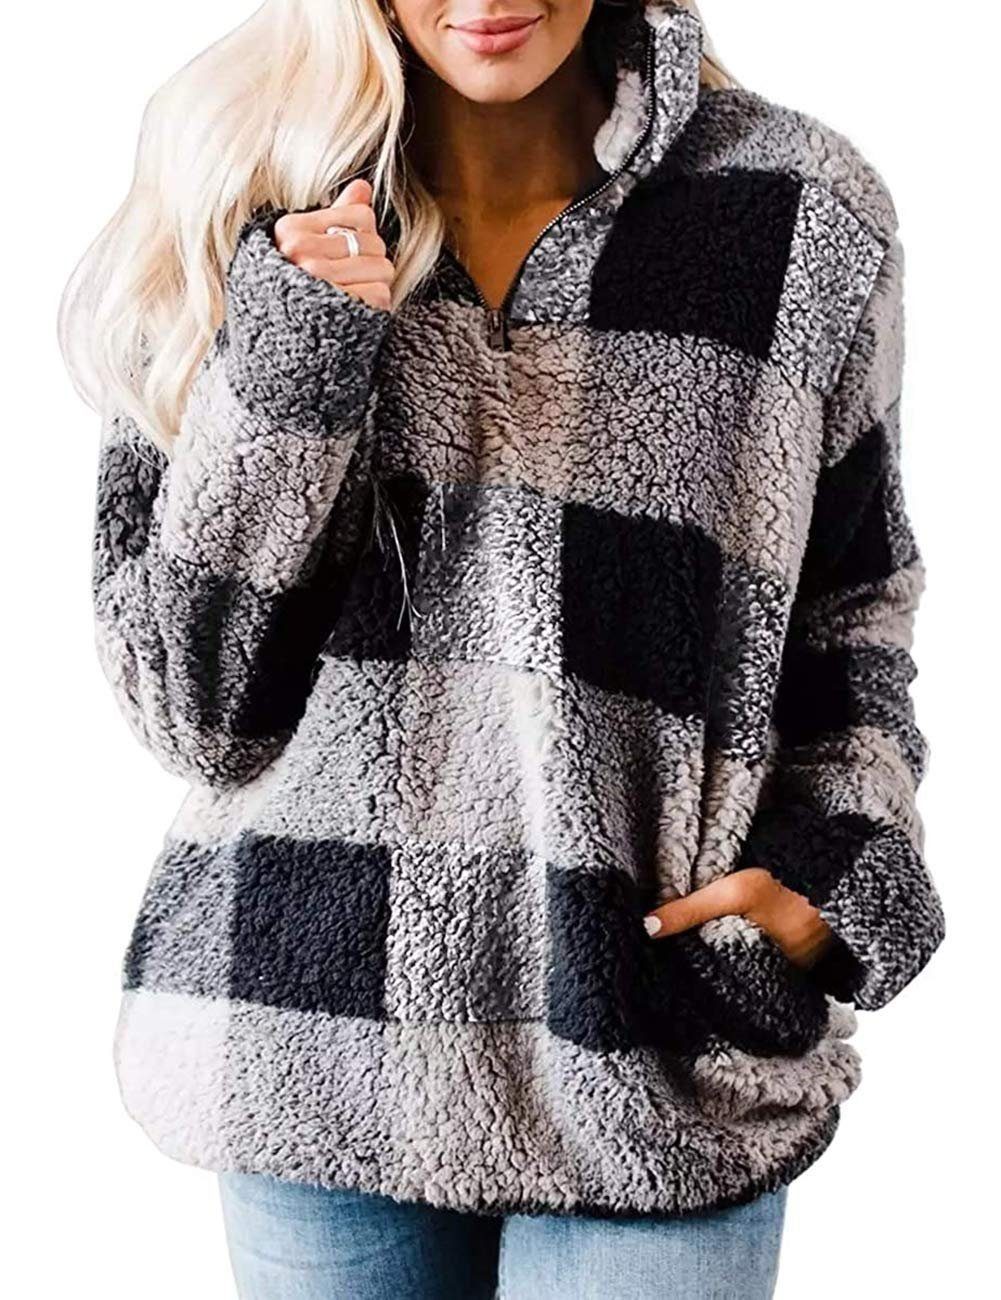 YYV Outdoorjacke Damen -Pulloverjacke aus kariertem Sherpa-Fleece mit Reißverschluss Passend für jeden Anlass und einfach zu stylen. Schwarz